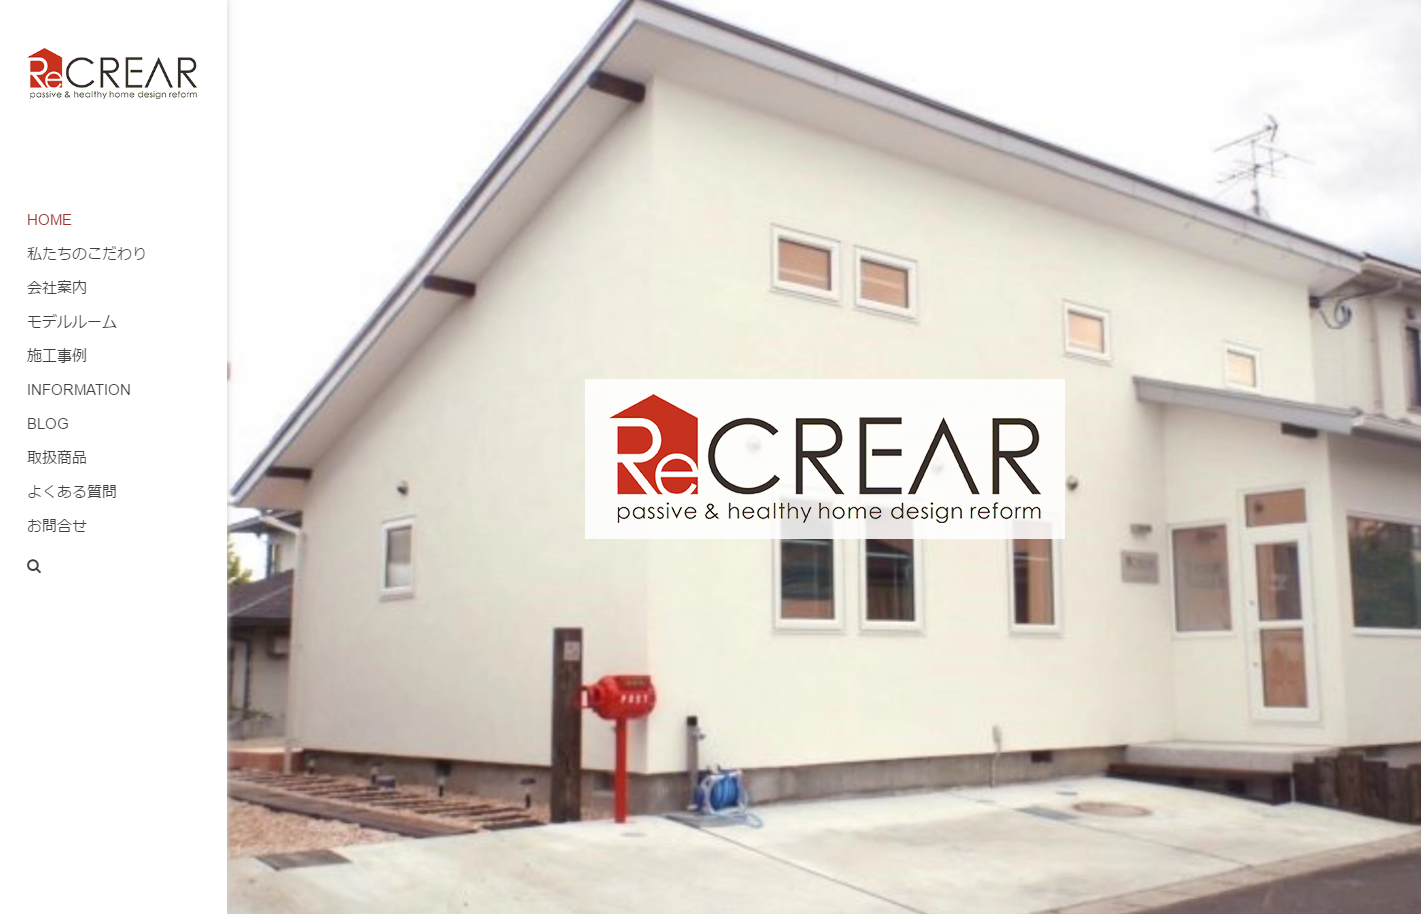 SnapCrab NoName 2017 4 27 17 23 20 No 00 - 仙台のリノベーション・無垢材と漆喰の家のReCREAR（クレア工業）様よりホームページのリニューアル及びSEO対策のご依頼を頂きました